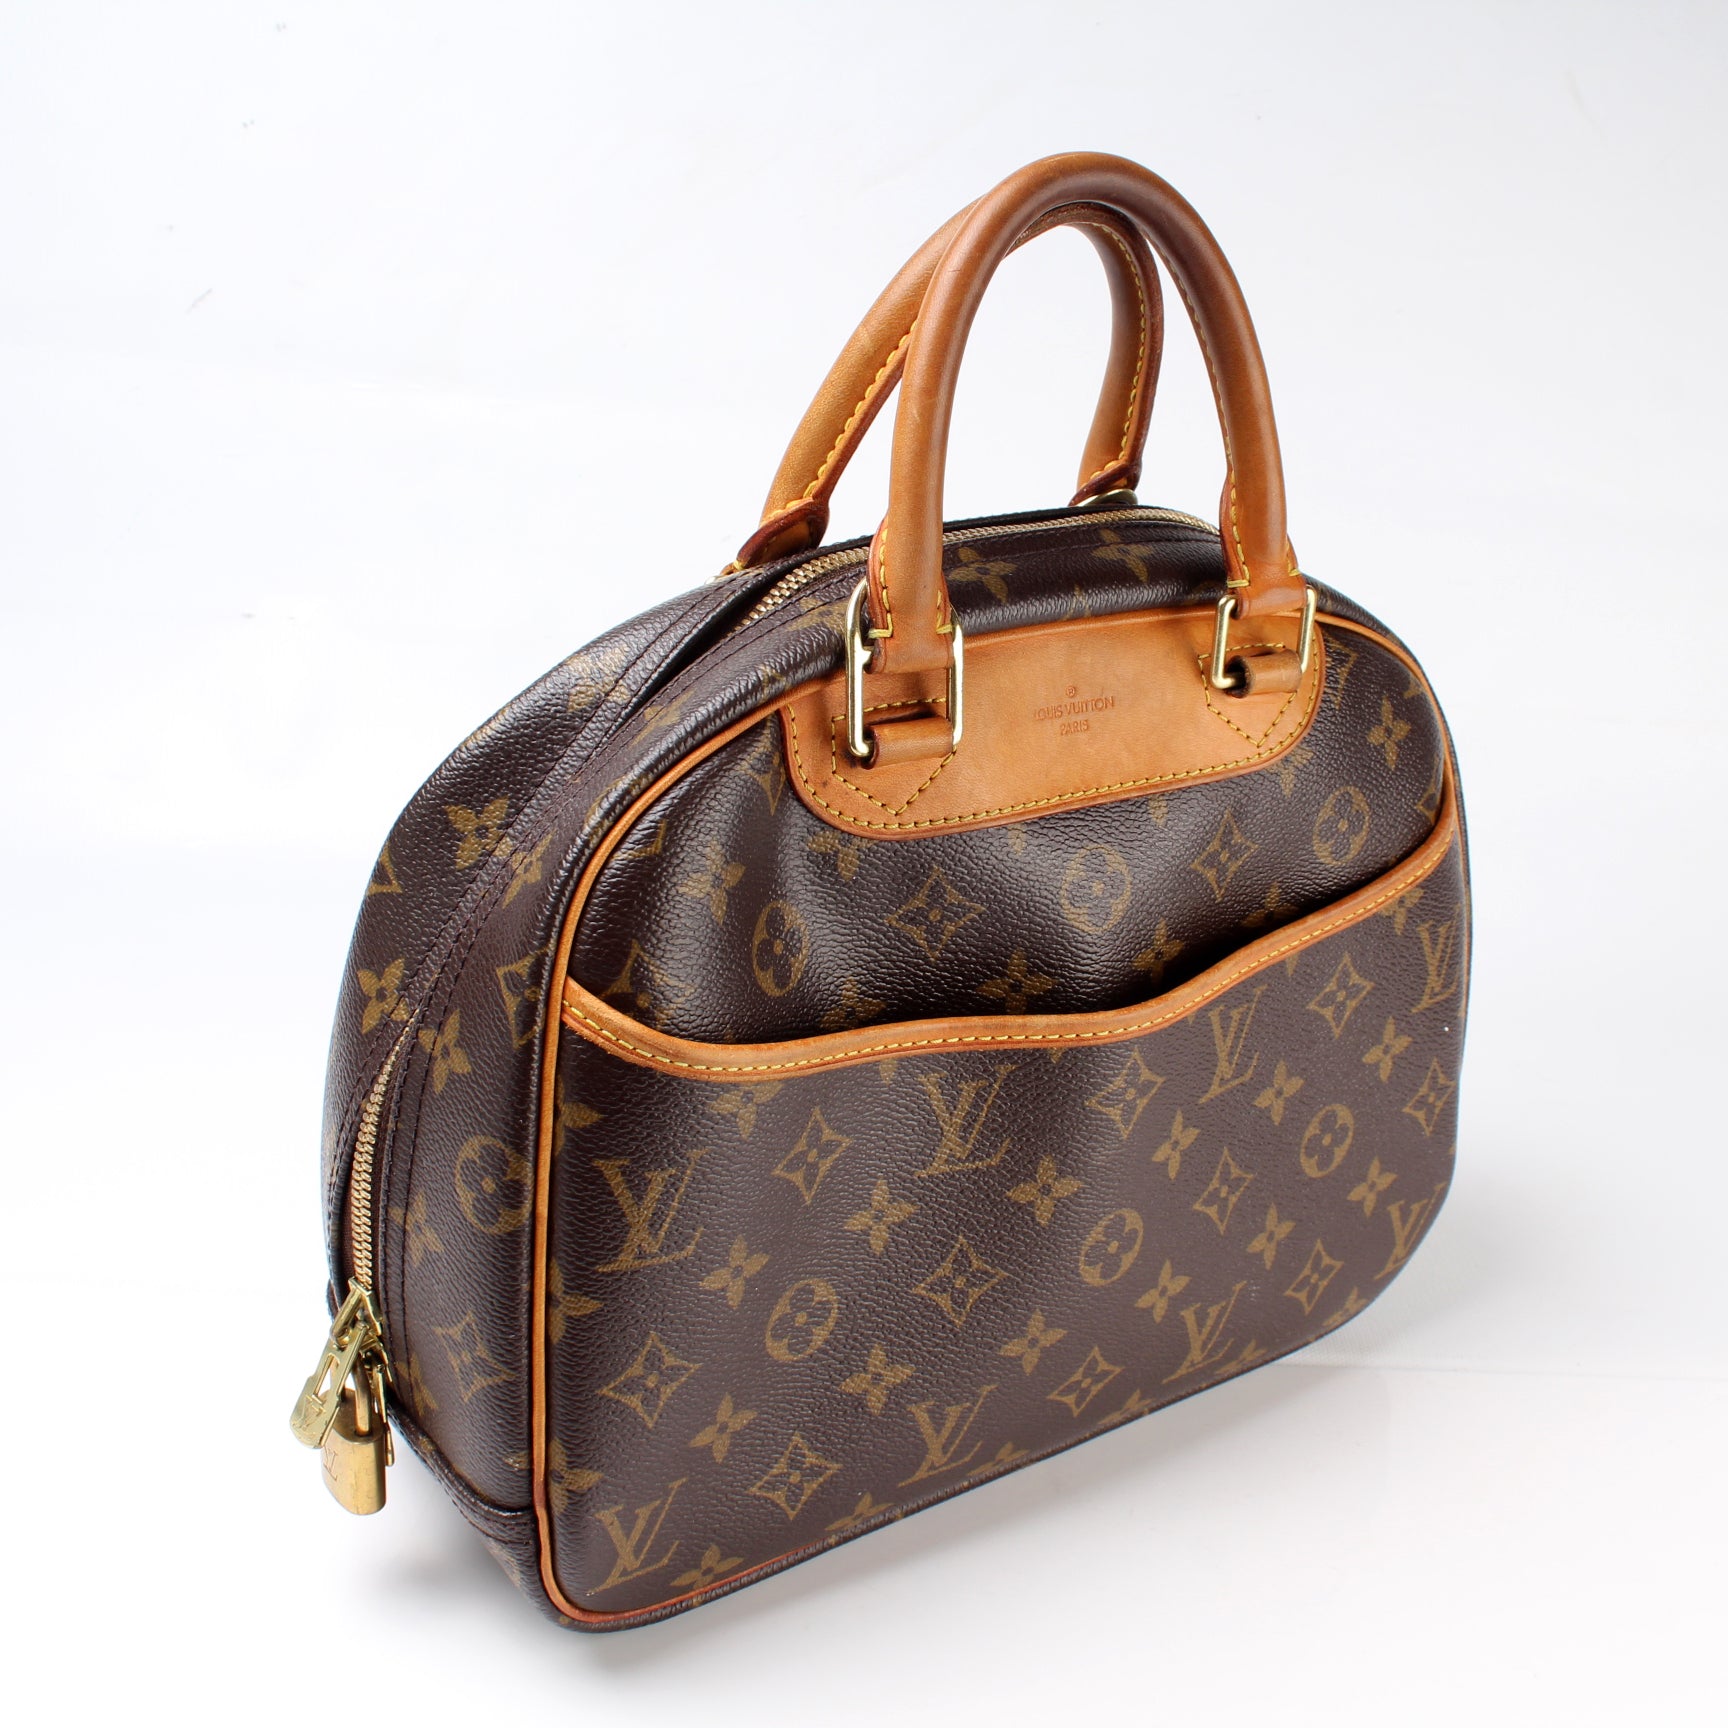 Louis Vuitton 2004 Pre-owned Trouville Handbag